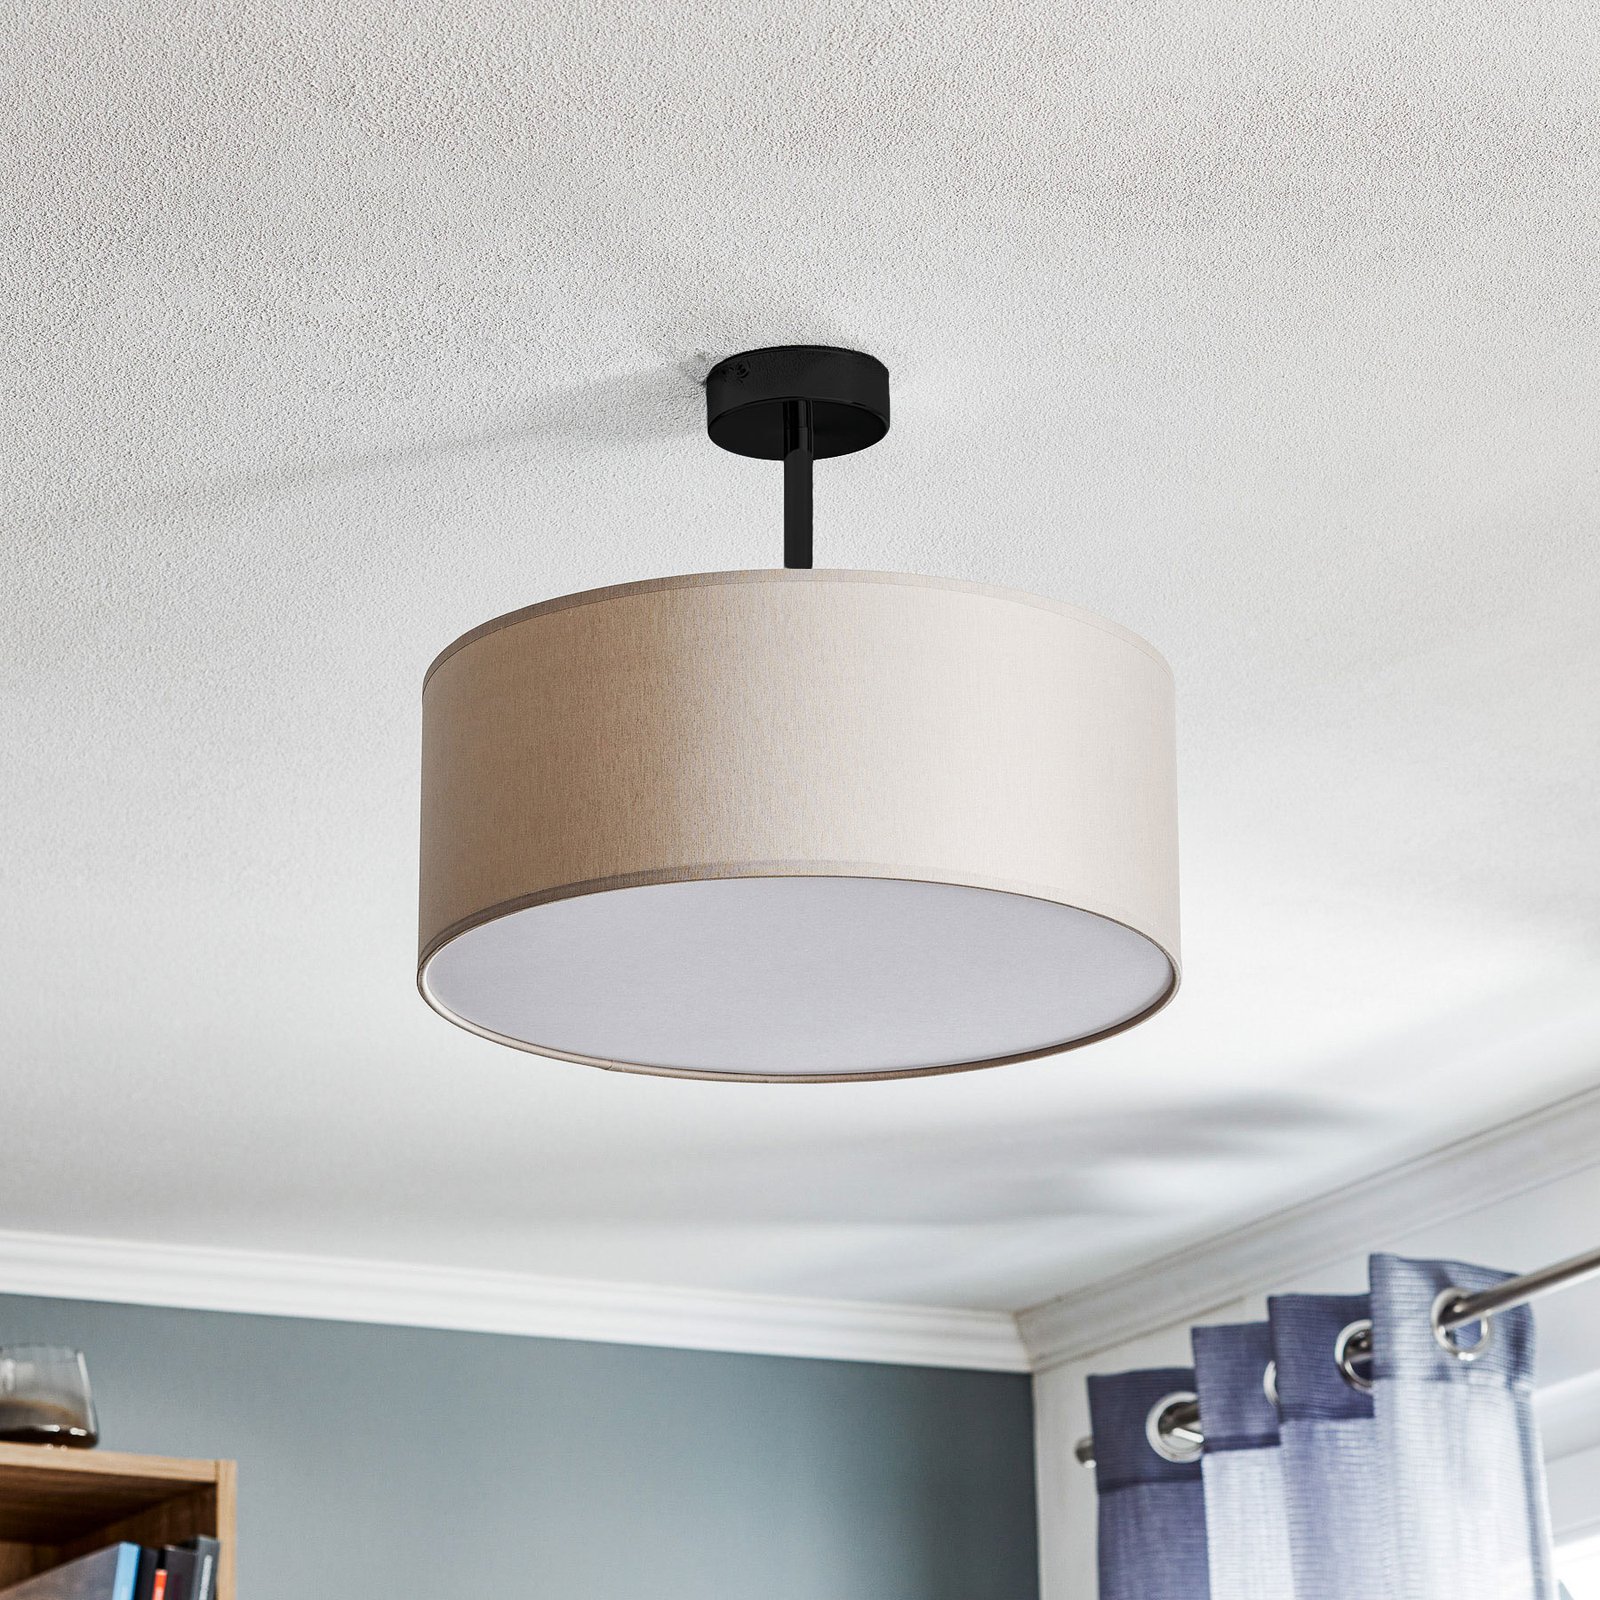 Rondo semi-flush ceiling light, cream Ø 45 cm